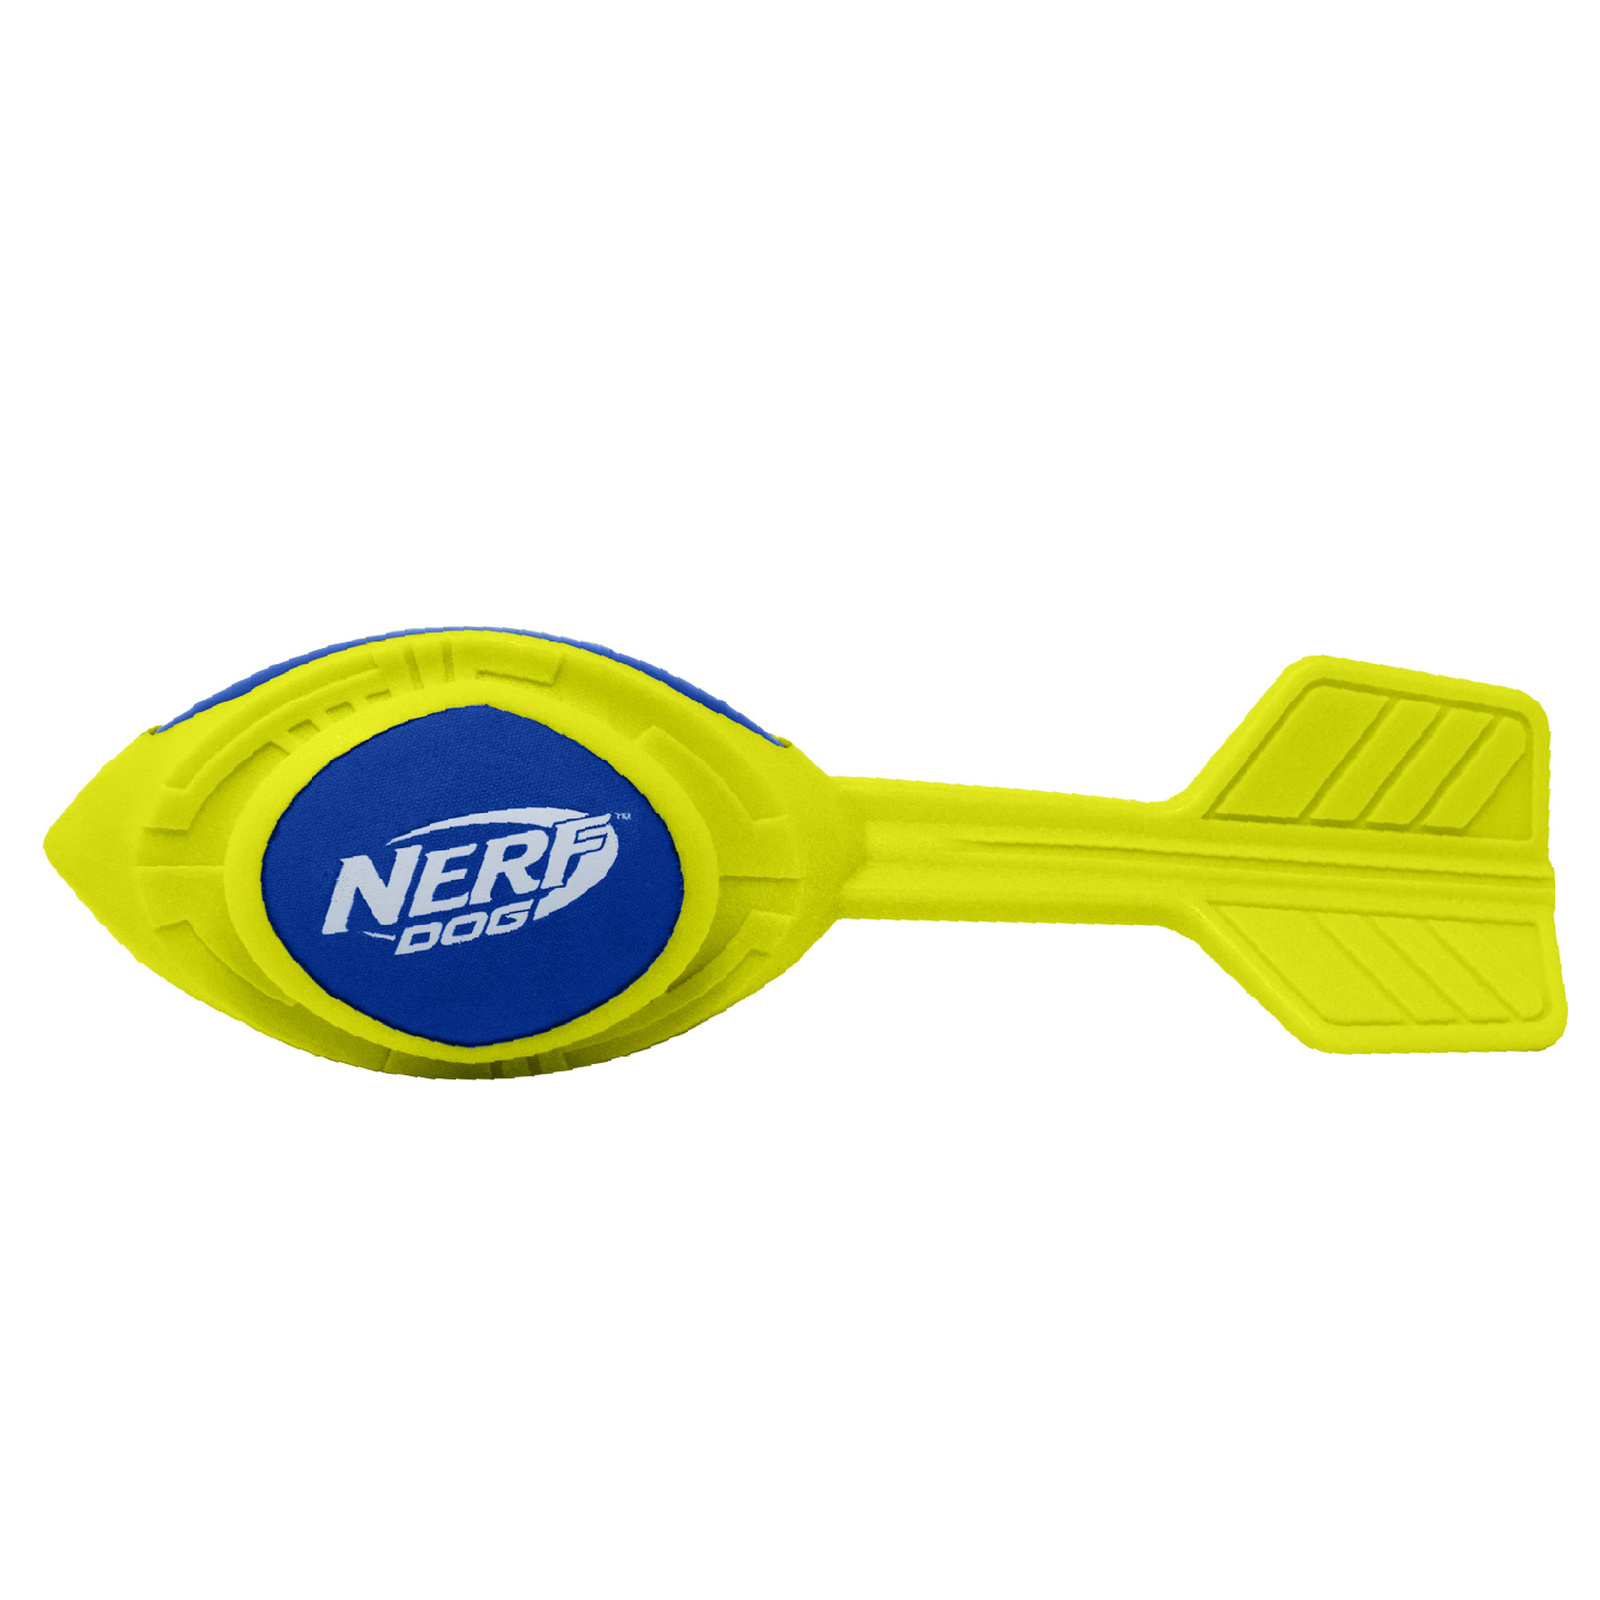 Nerf Nerf игрушка из вспененной резины 30 см (серия Мегатон) (290 г)